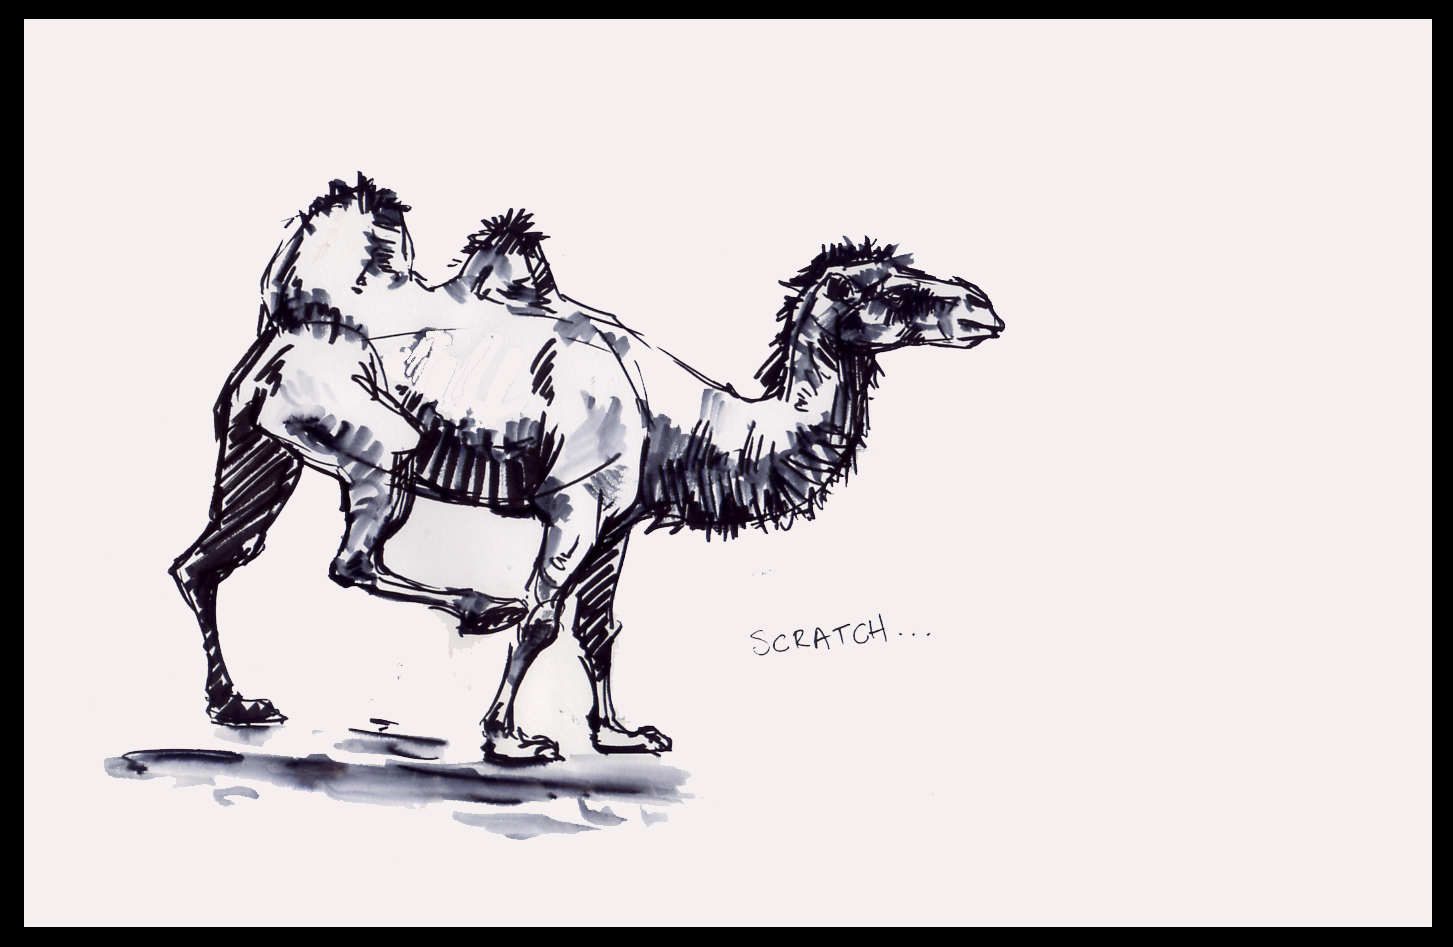 [camel1.jpg]